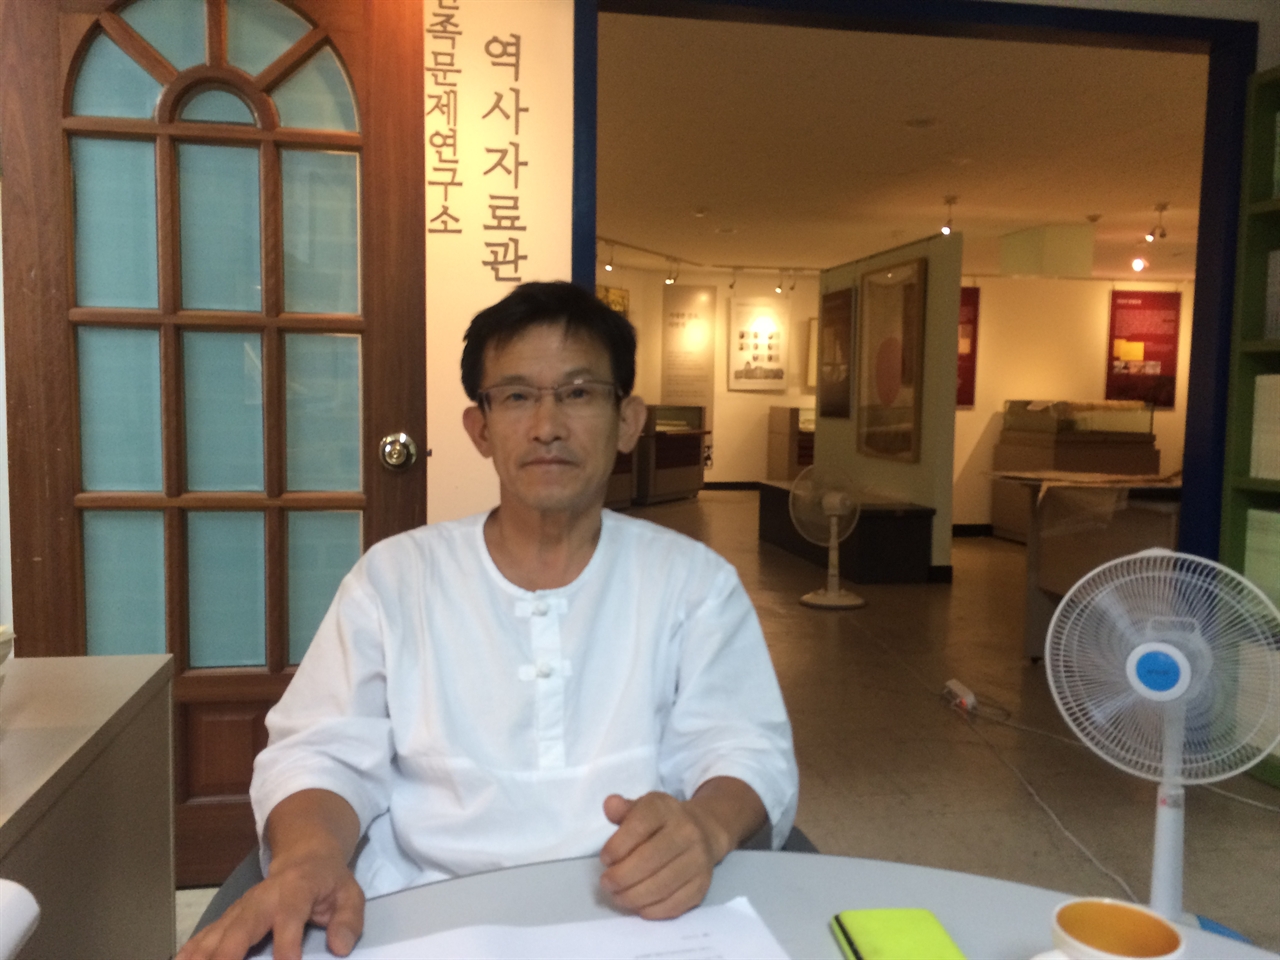 박한용 민족문제연구소 교육홍보실장